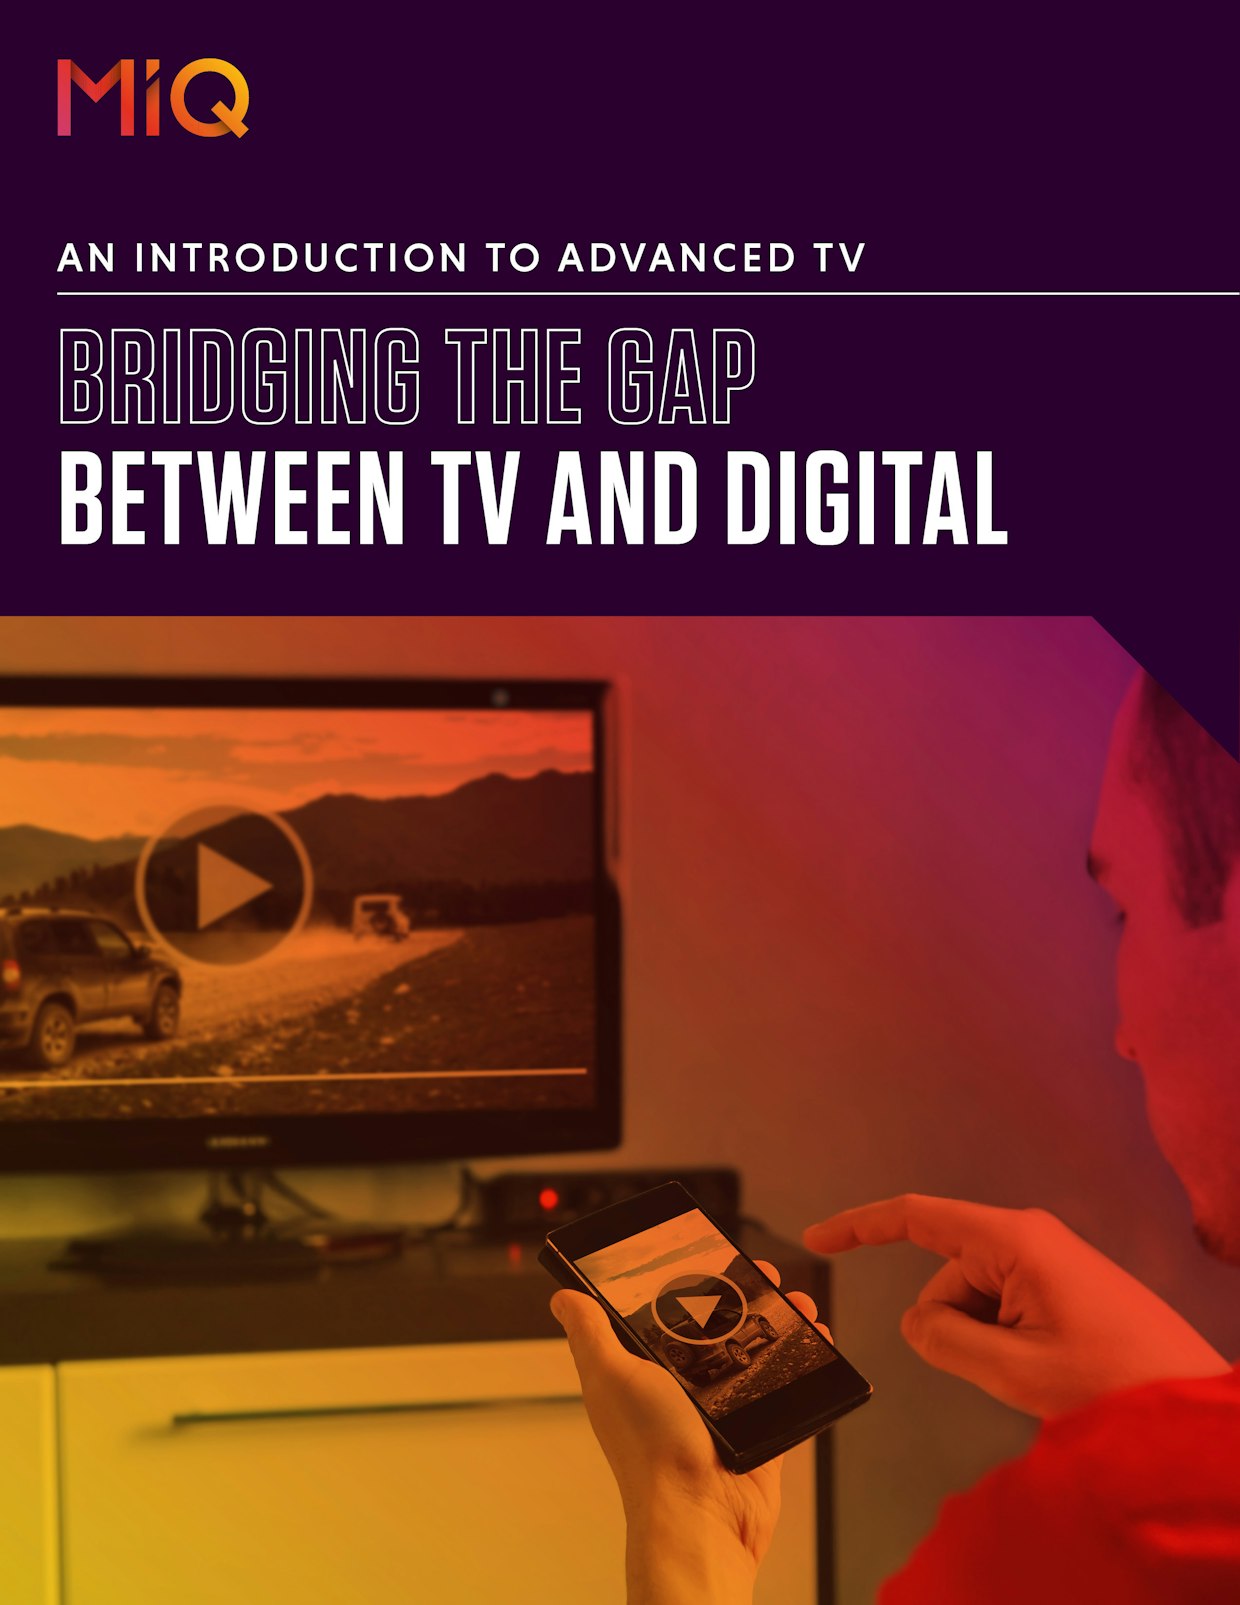 Bridging the gap between TV and digital